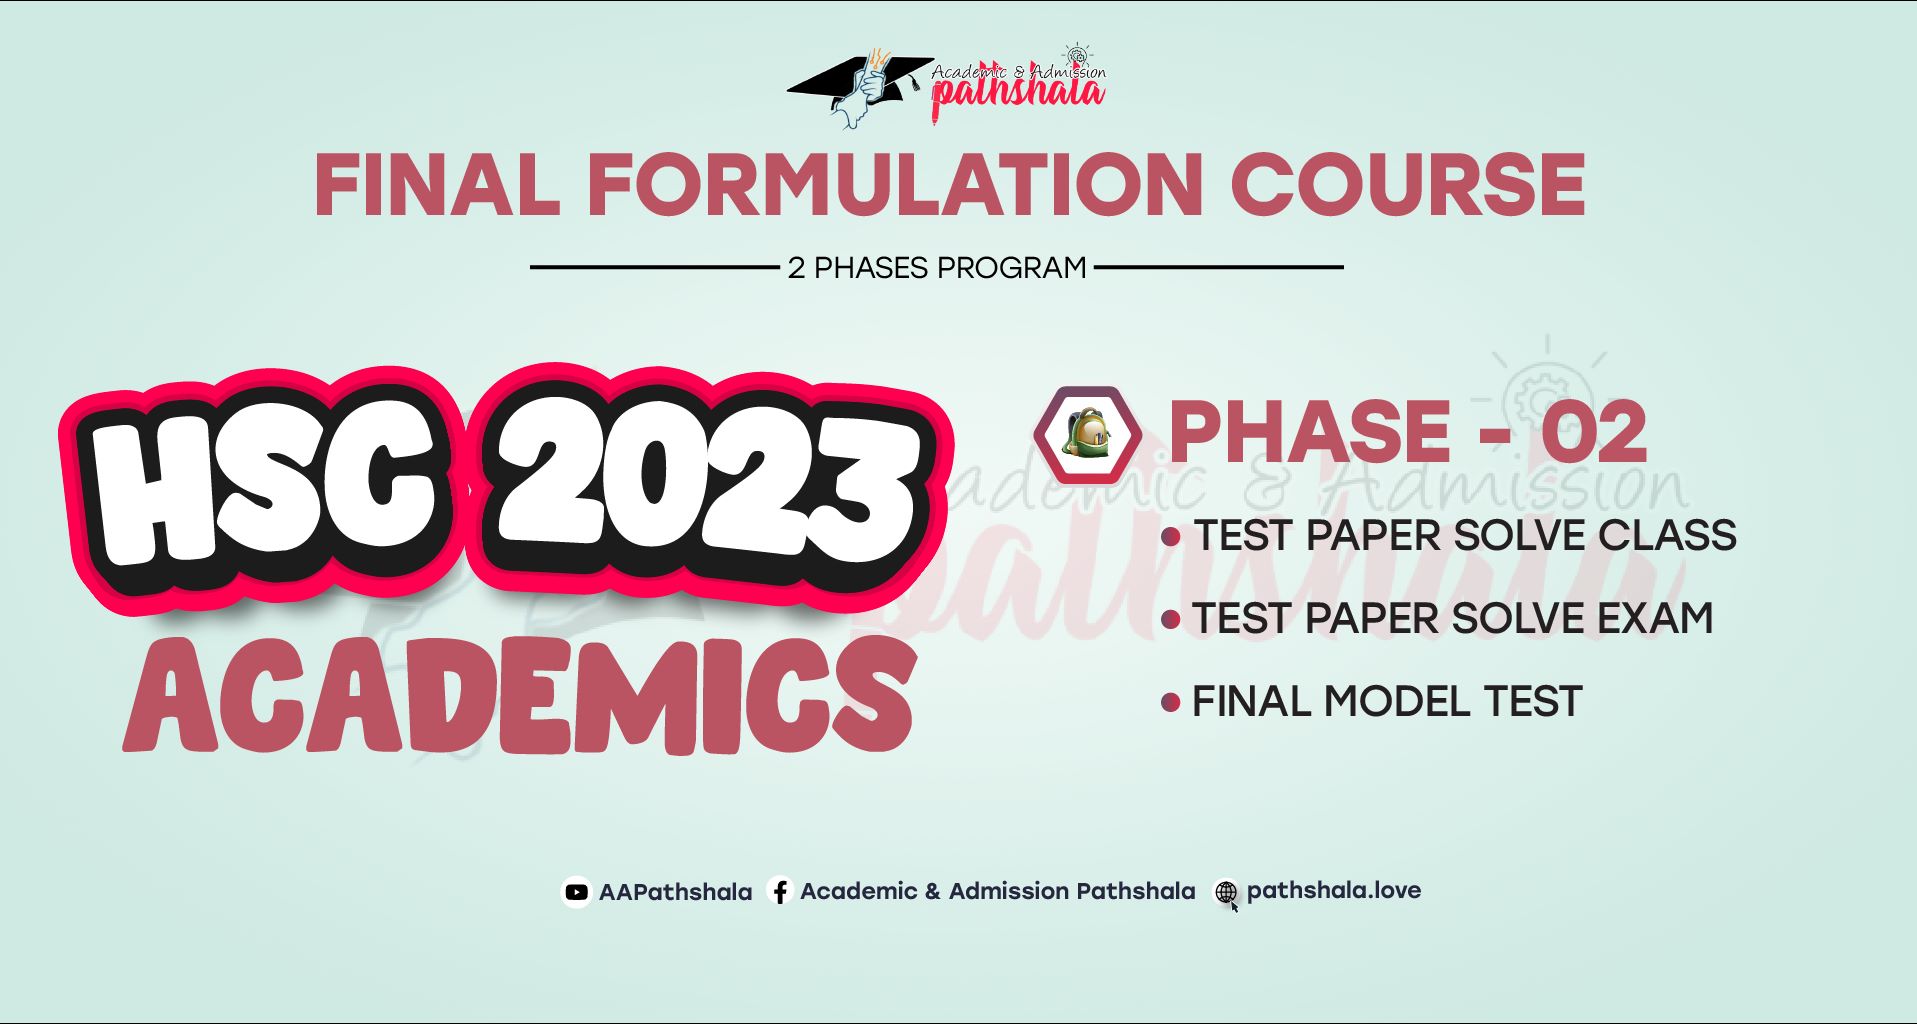 HSC-2023 : Academic Final Formulation Course